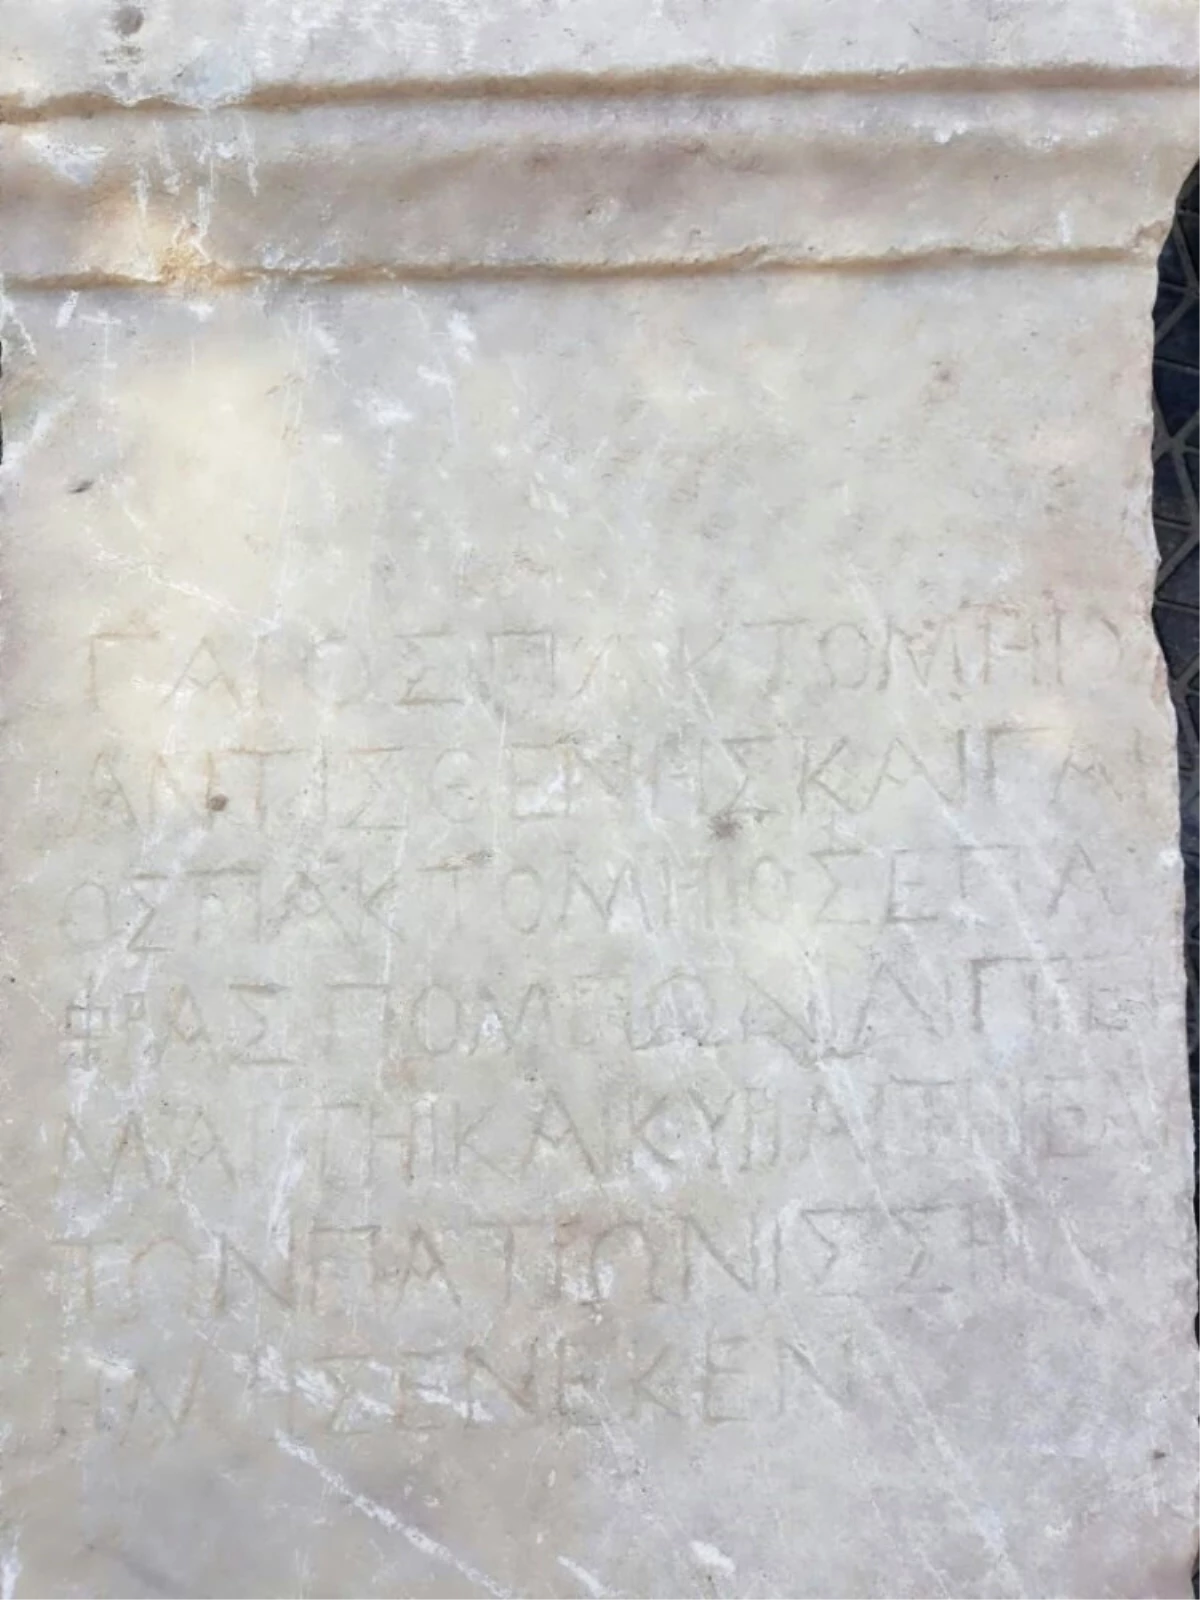 Tarihi Eser Kaçakçıları Roma Dönemine Ait Mezar Taşı ile Yakalandı